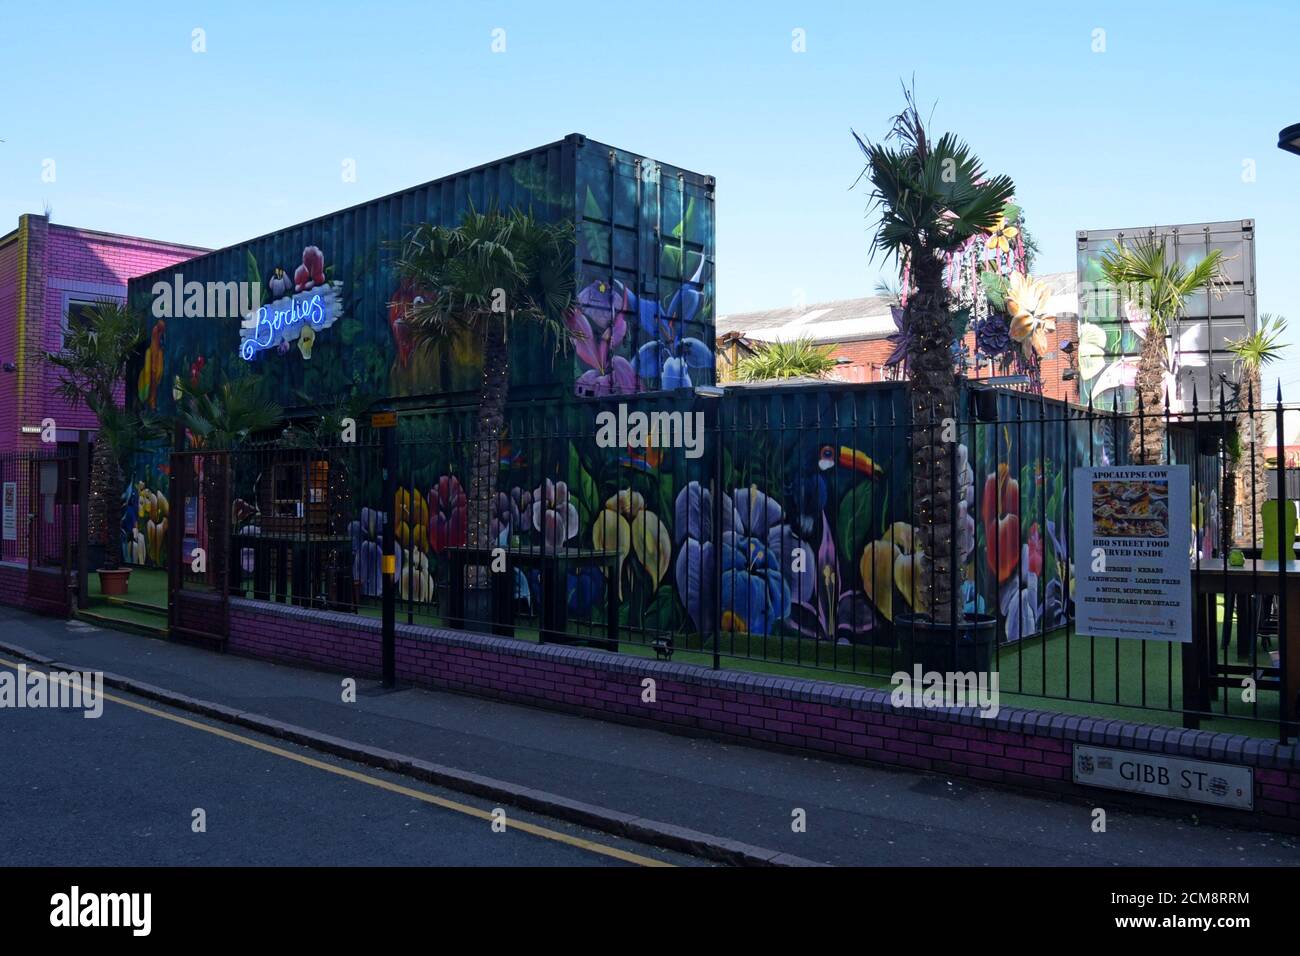 Recycelte Transportbehälter mit lebhaften Wandgemälden im Straßenkunstwerk schaffen einen Barbereich im Freien in der Birdies Bar und Grill in Digbeth, Birmingham Stockfoto